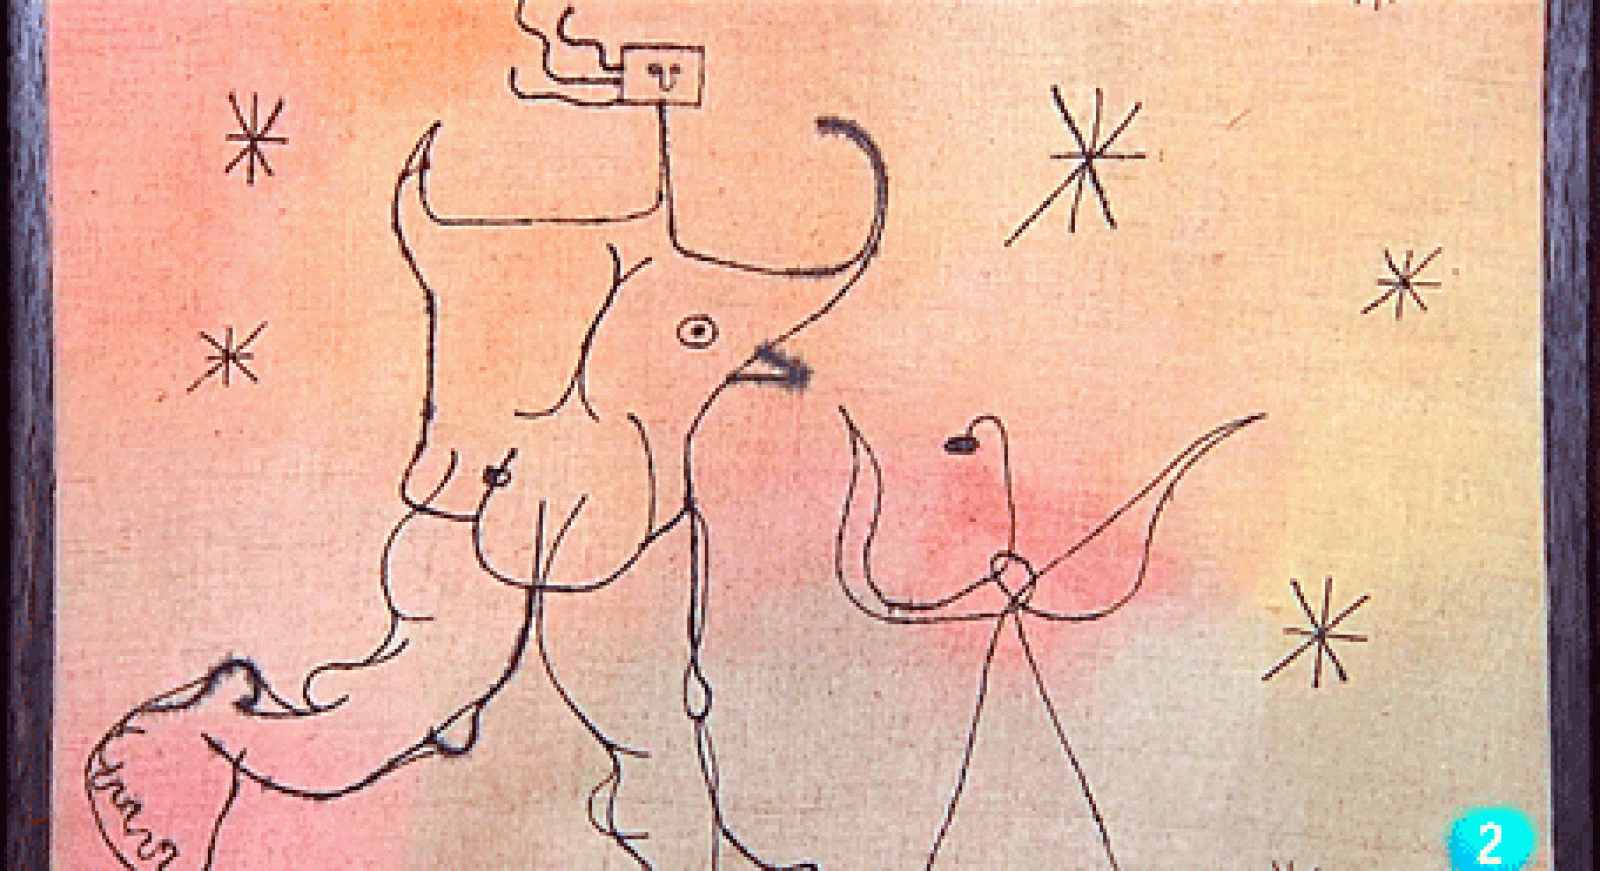 La aventura del saber - Miró, una colección